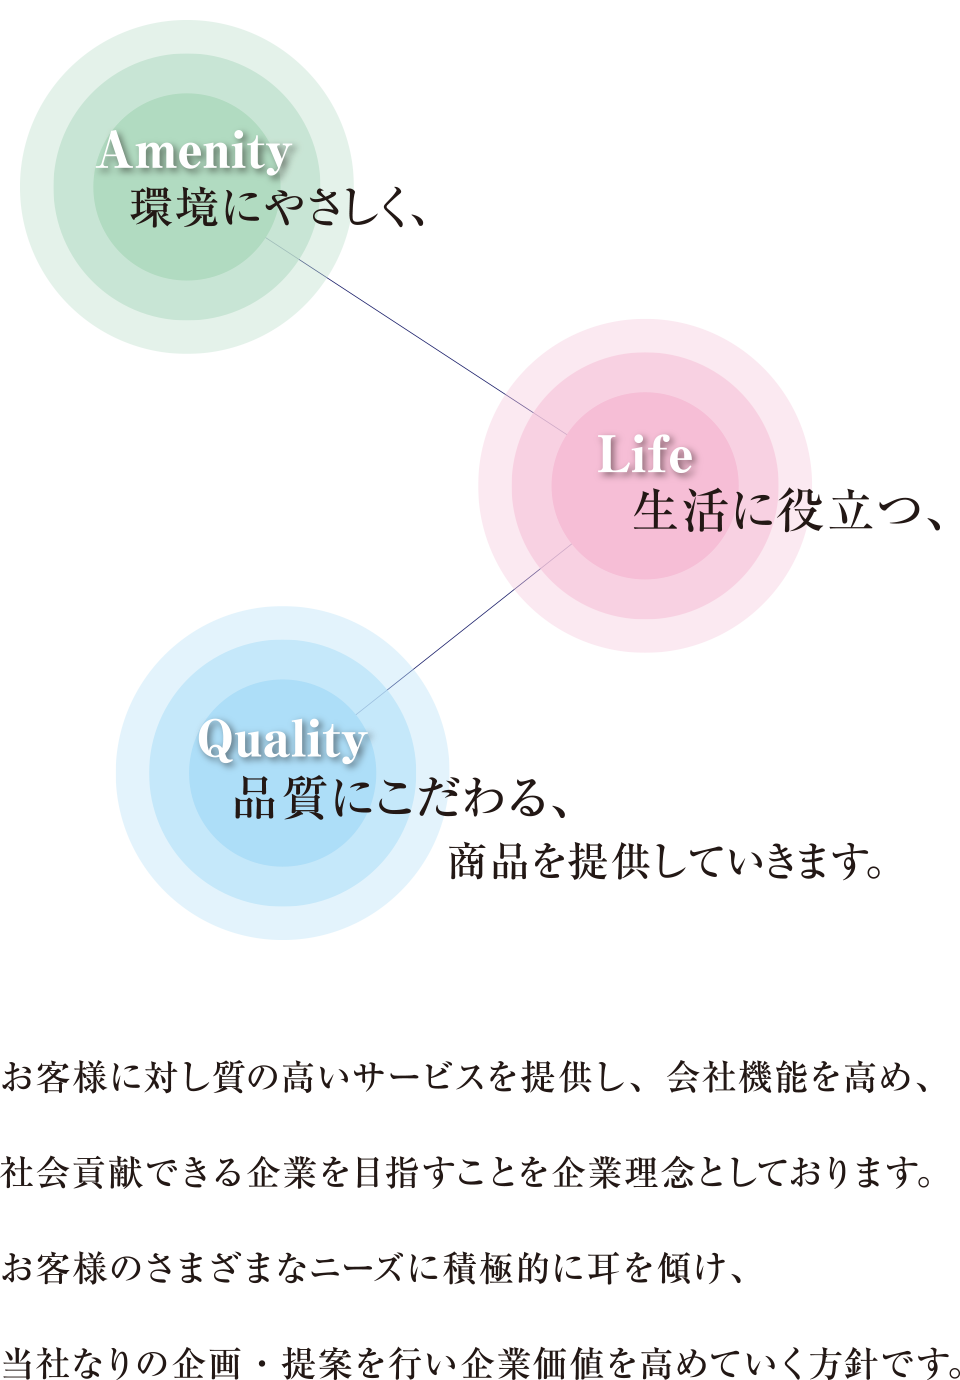 アルクの方針　Amenity：環境に優しく、Life：生活に役立つ、Quality：品質にこだわる、商品を提供していきます。